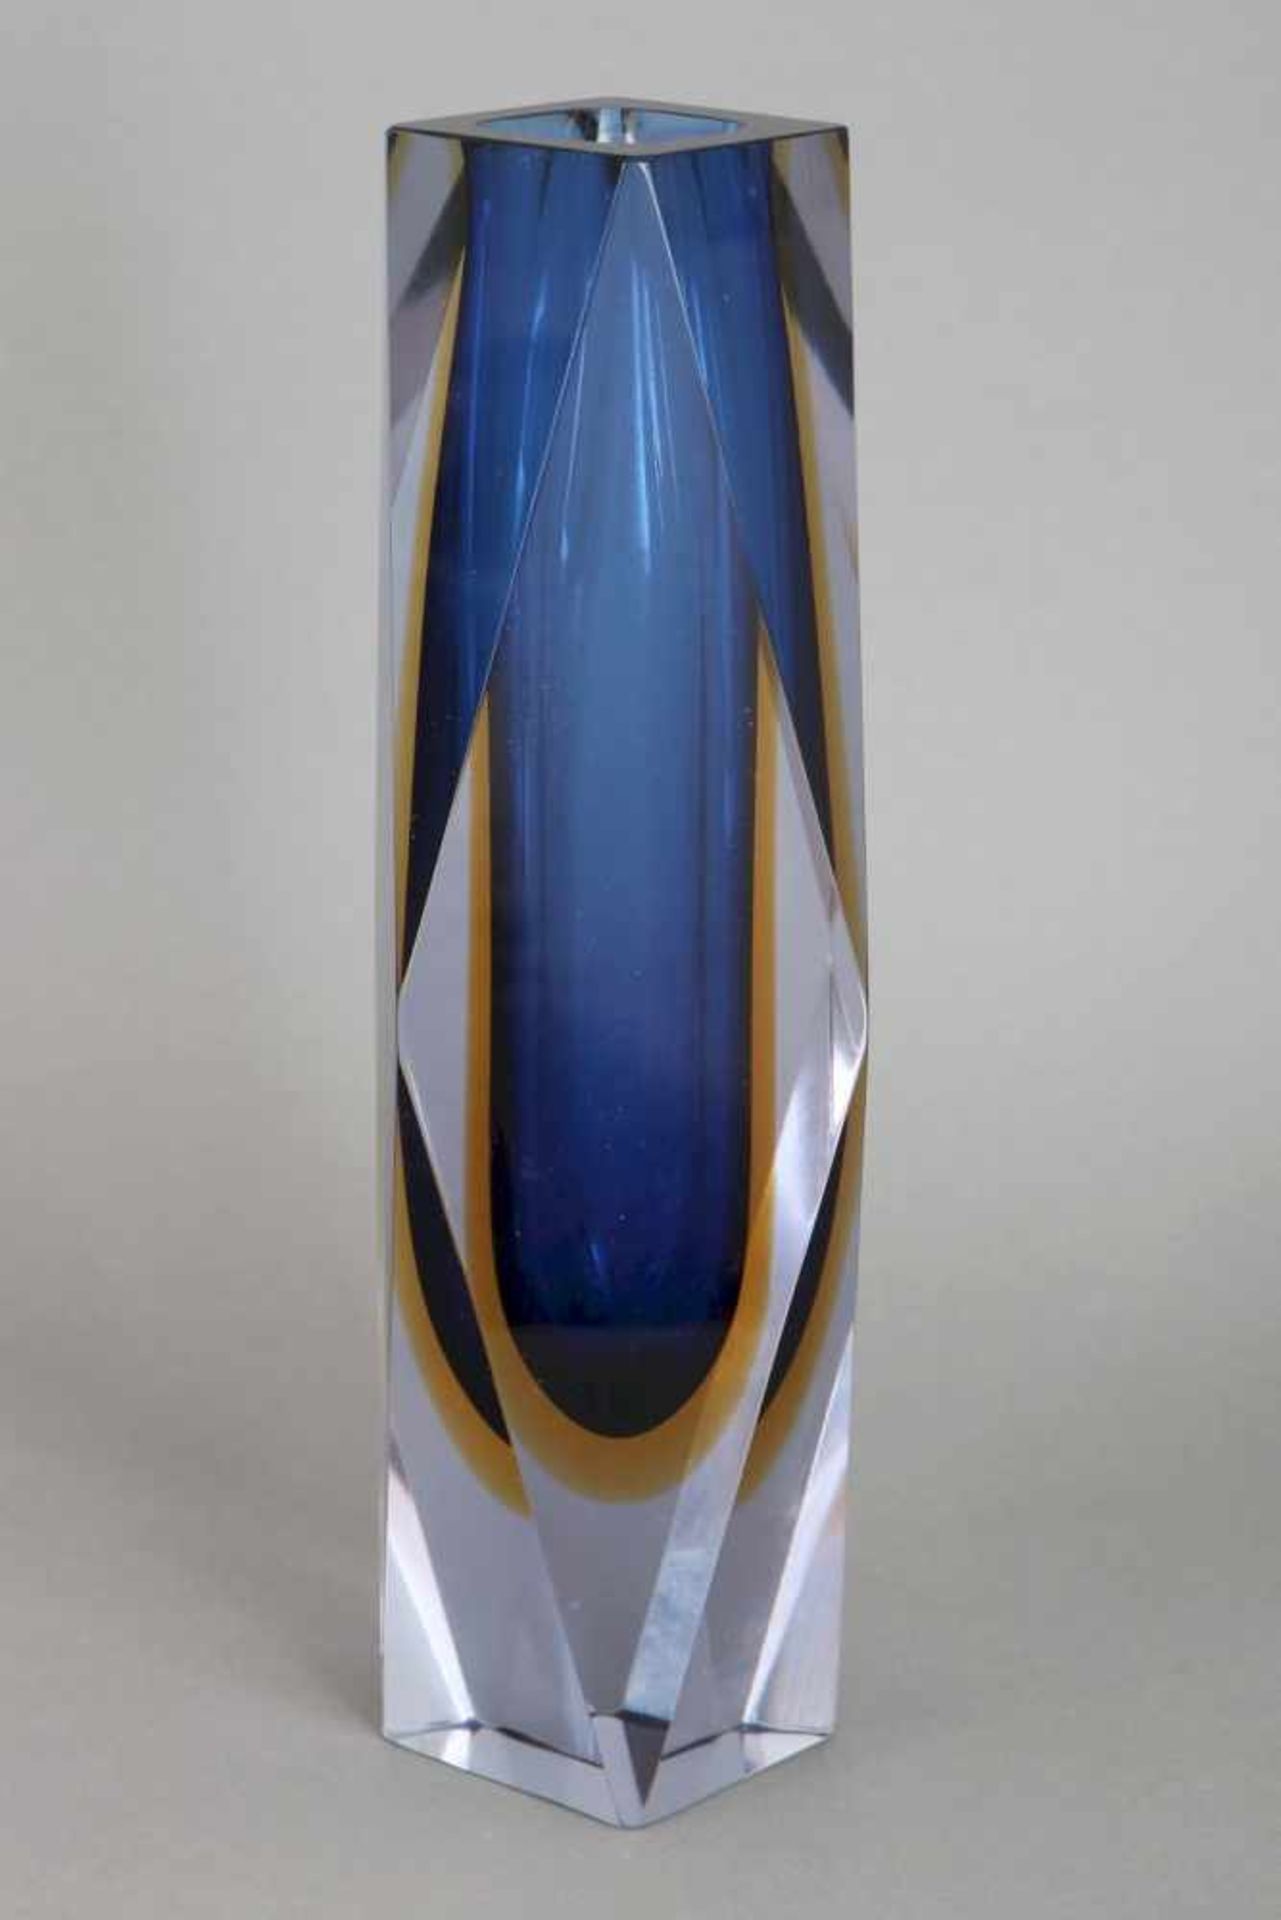 FLAVIO POLI (Murano) Sommerso Glasvase1960er Jahre, hoher, gekanteter Korpus mit blau-gelben